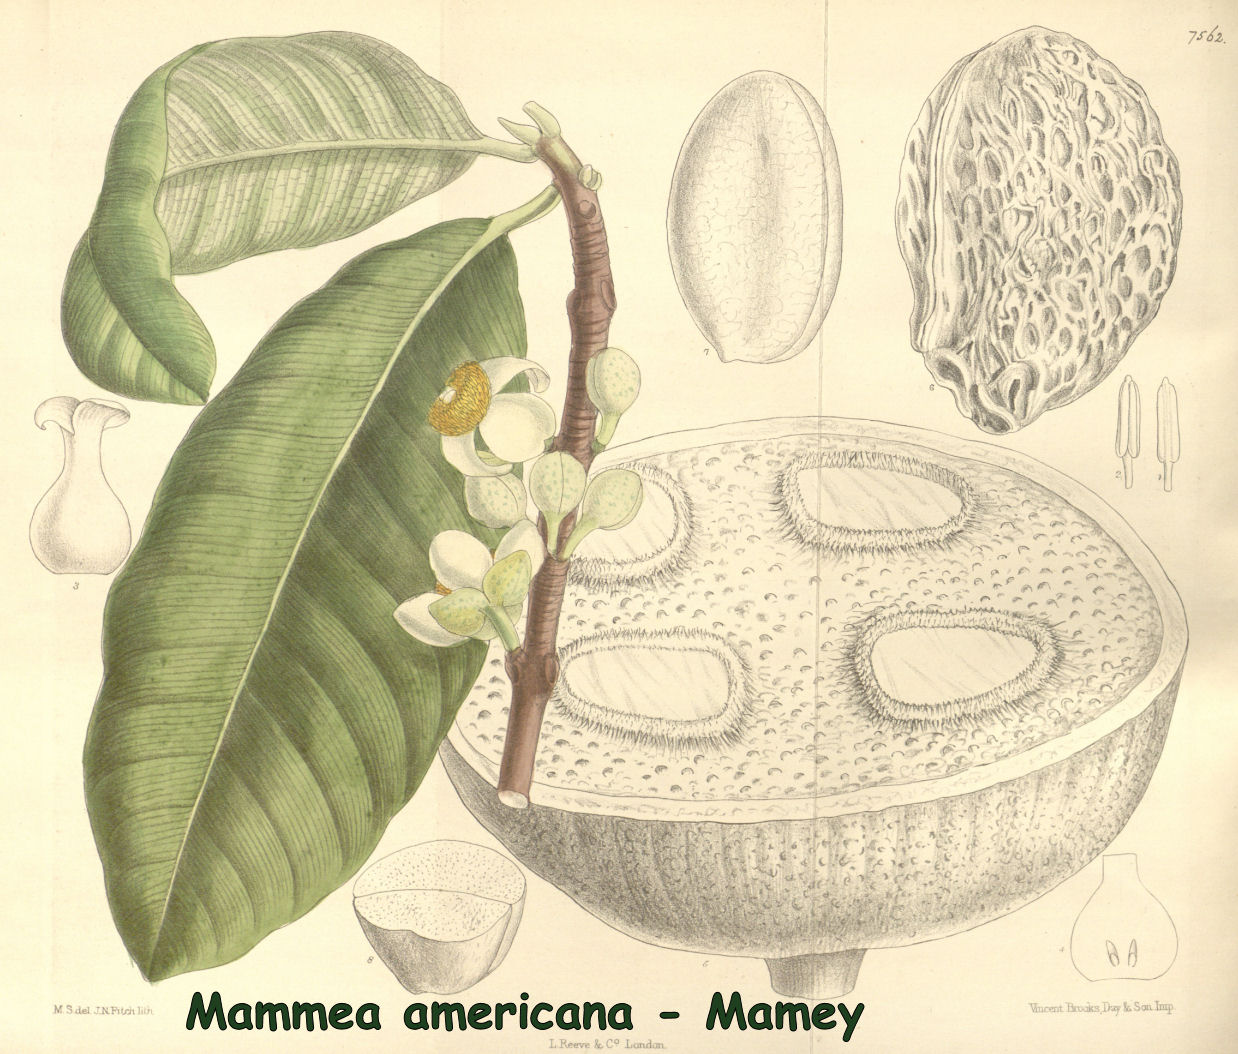 Mammea americana - Mamey